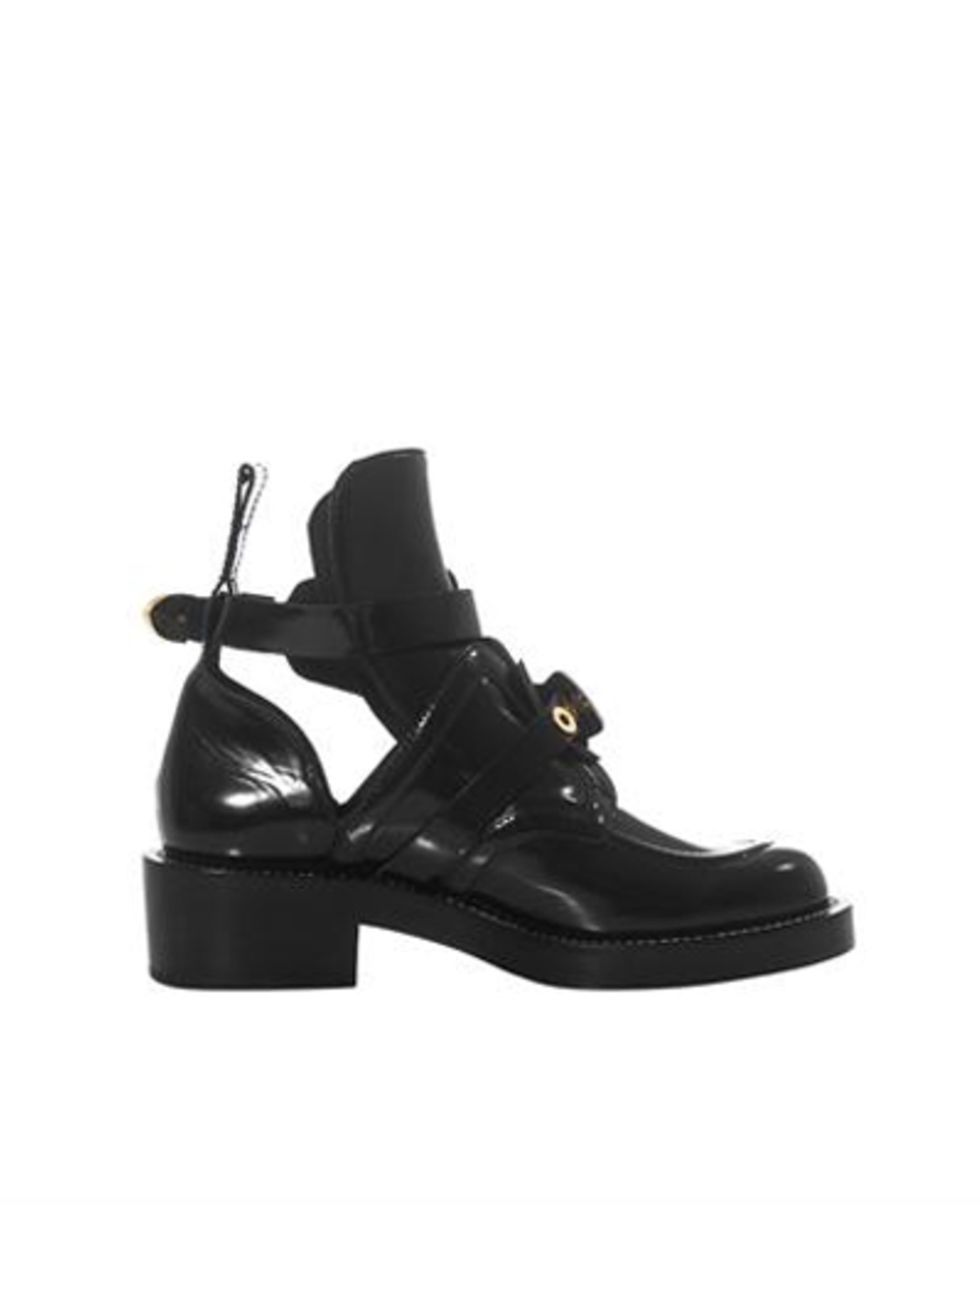 Footwear, Shoe, Boot, Black, Leather, Beige, Synthetic rubber, Costume accessory, Dress shoe, Steel-toe boot, 